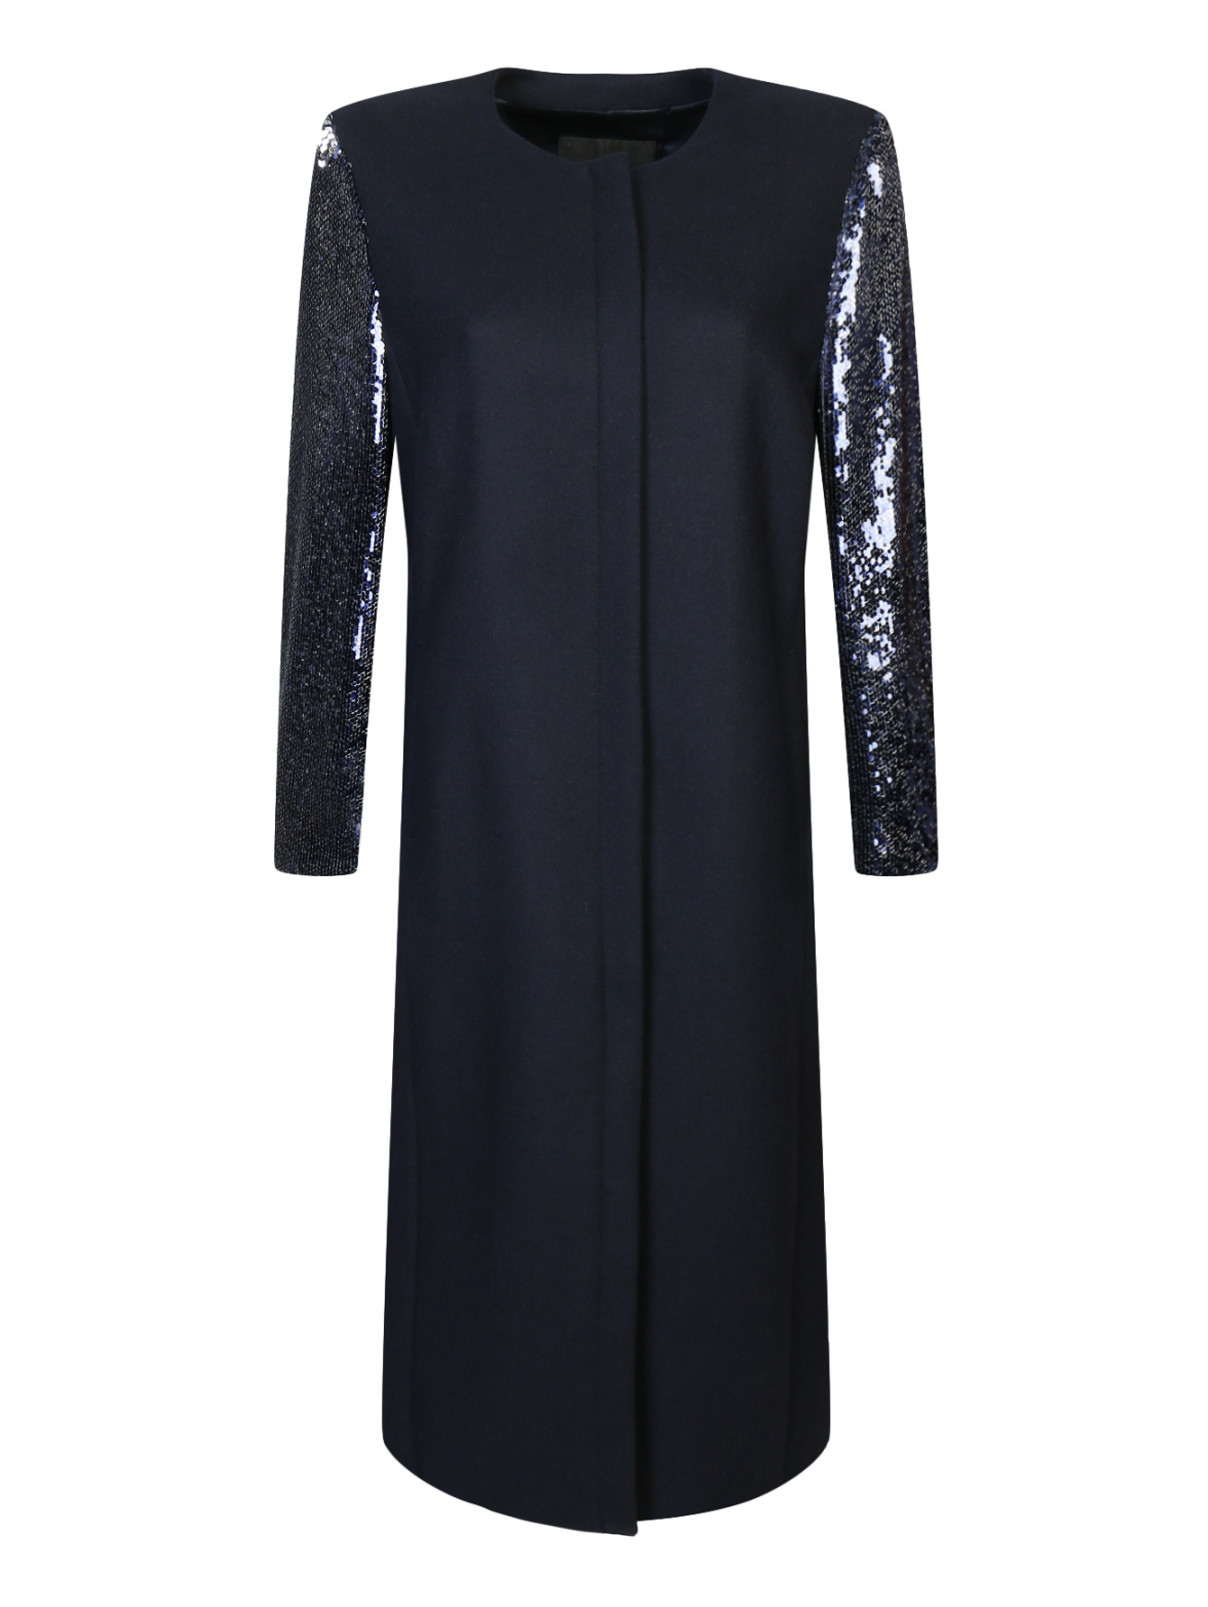 Пальто из шерсти декорированное пайетками Marina Rinaldi  –  Общий вид  – Цвет:  Синий